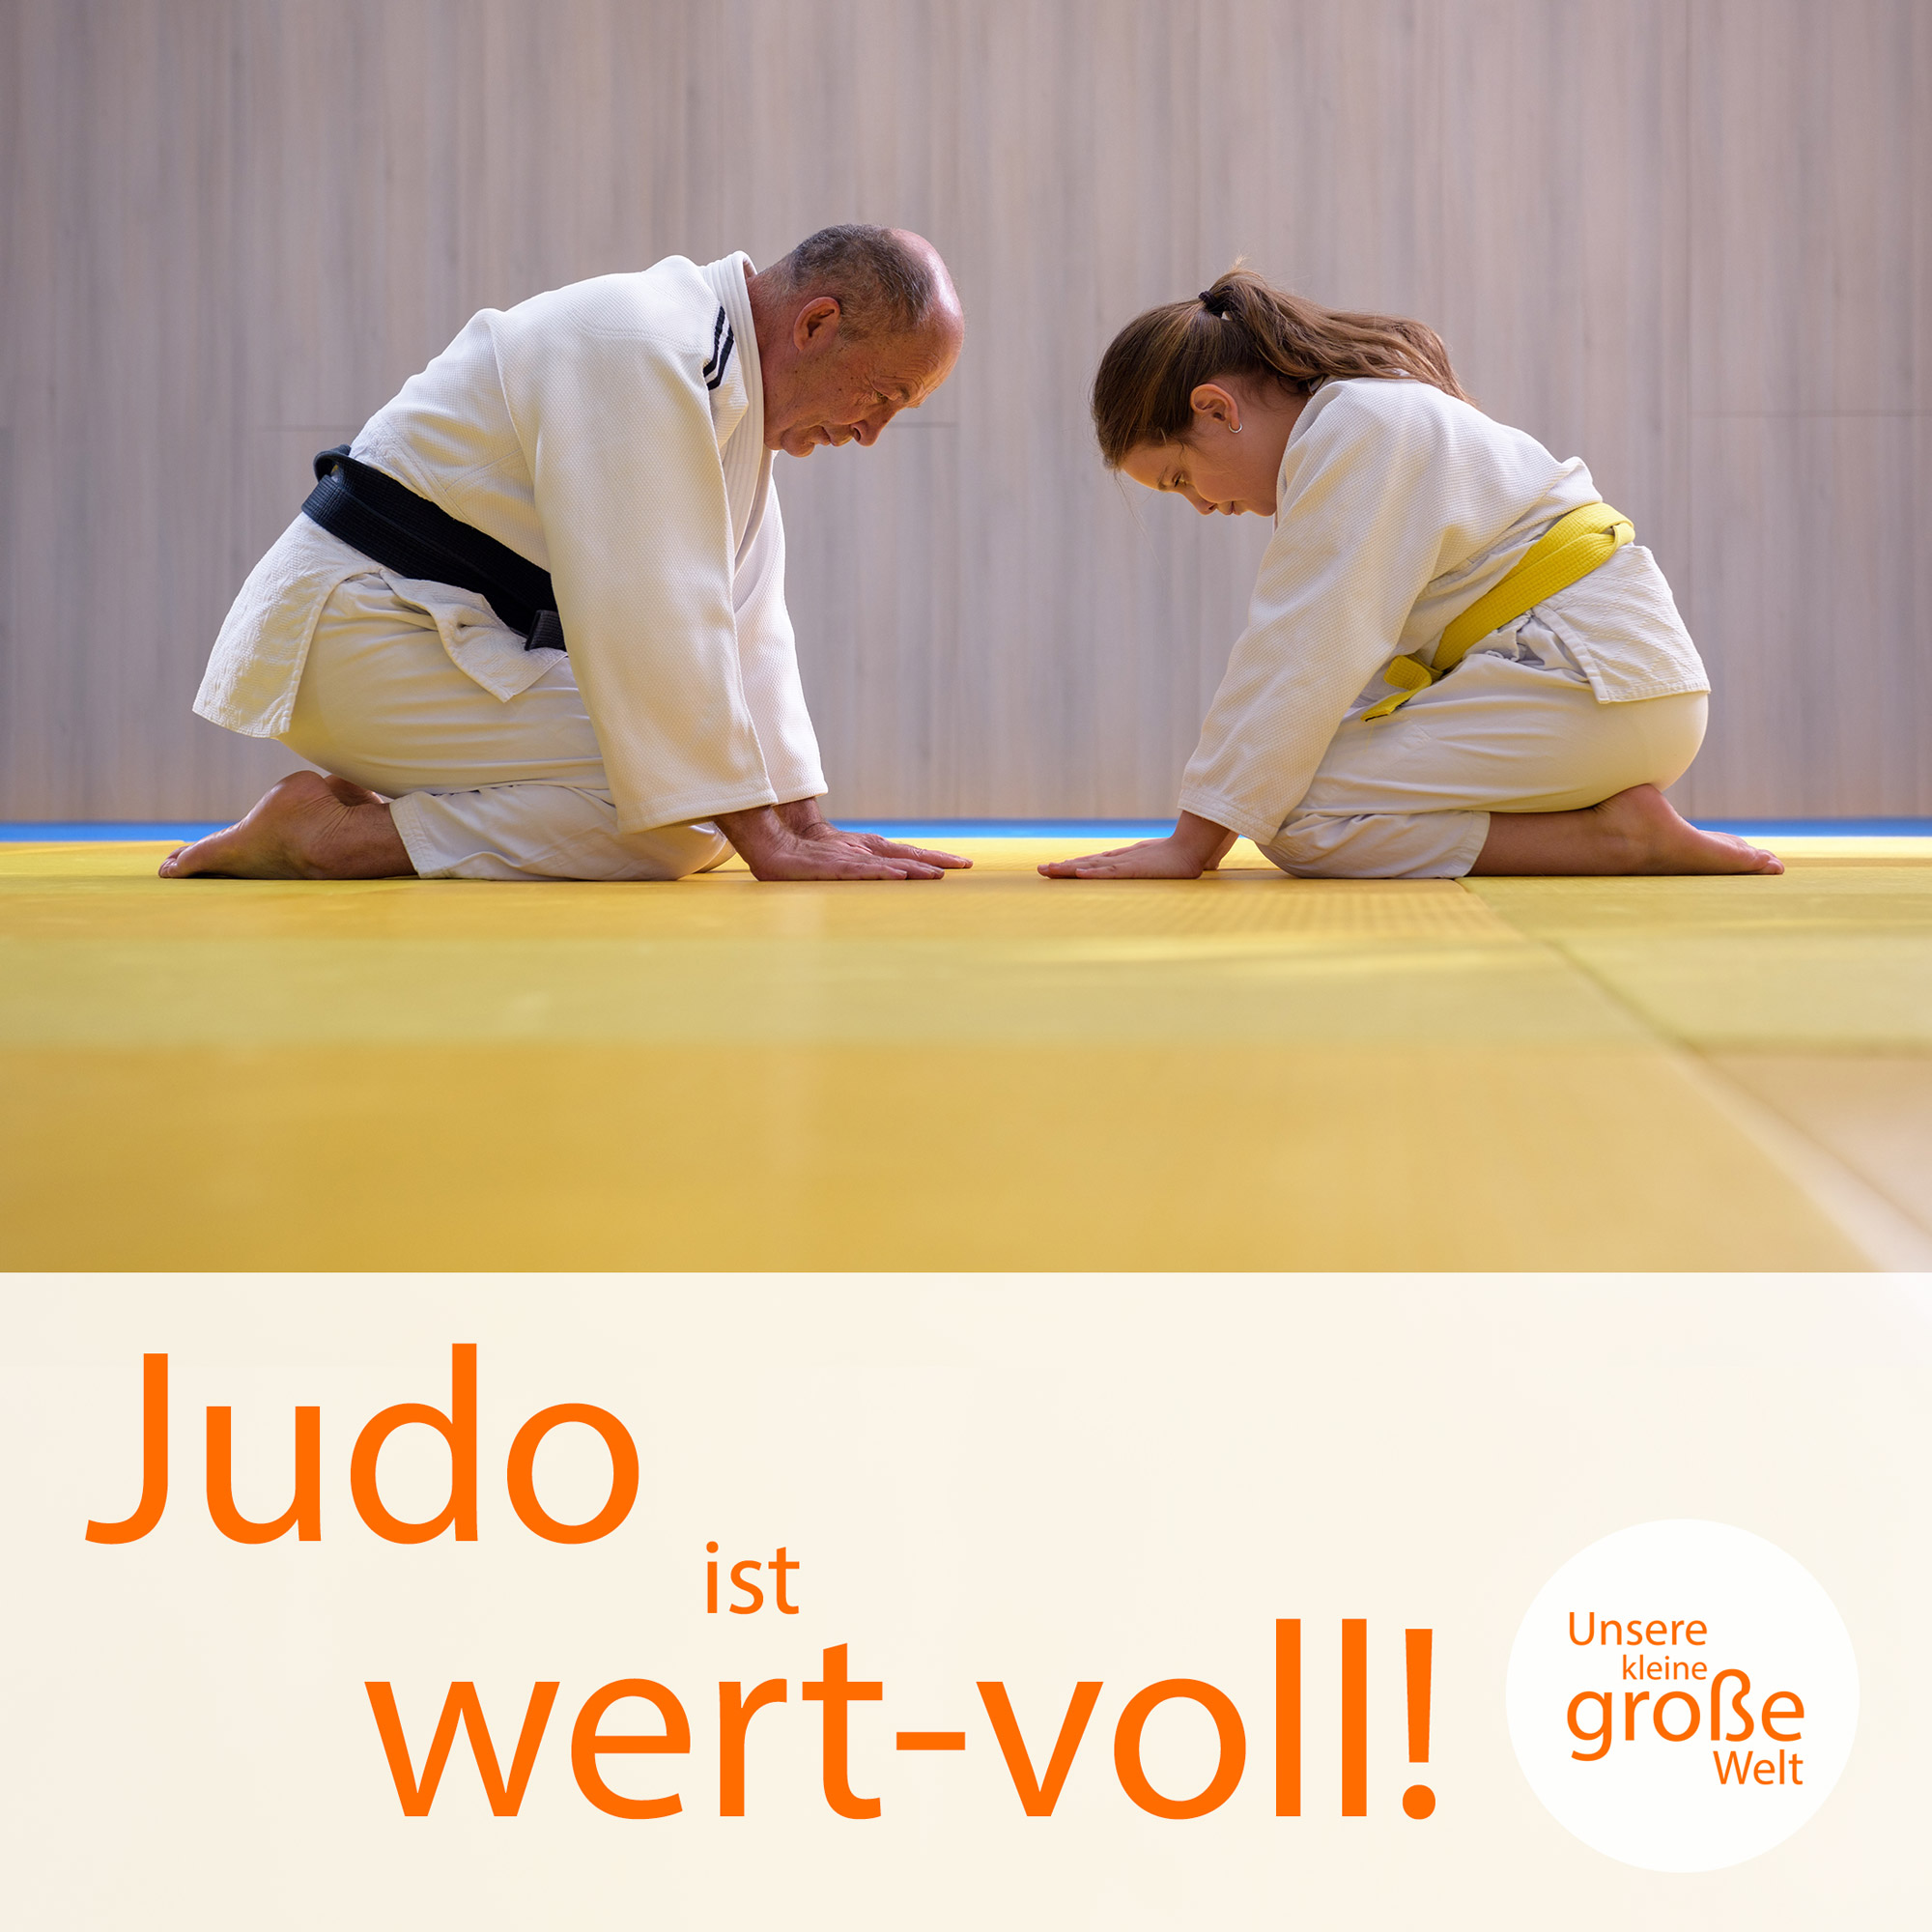 Unsere kleine, große Welt Folge 60: Judo ist wert-voll!